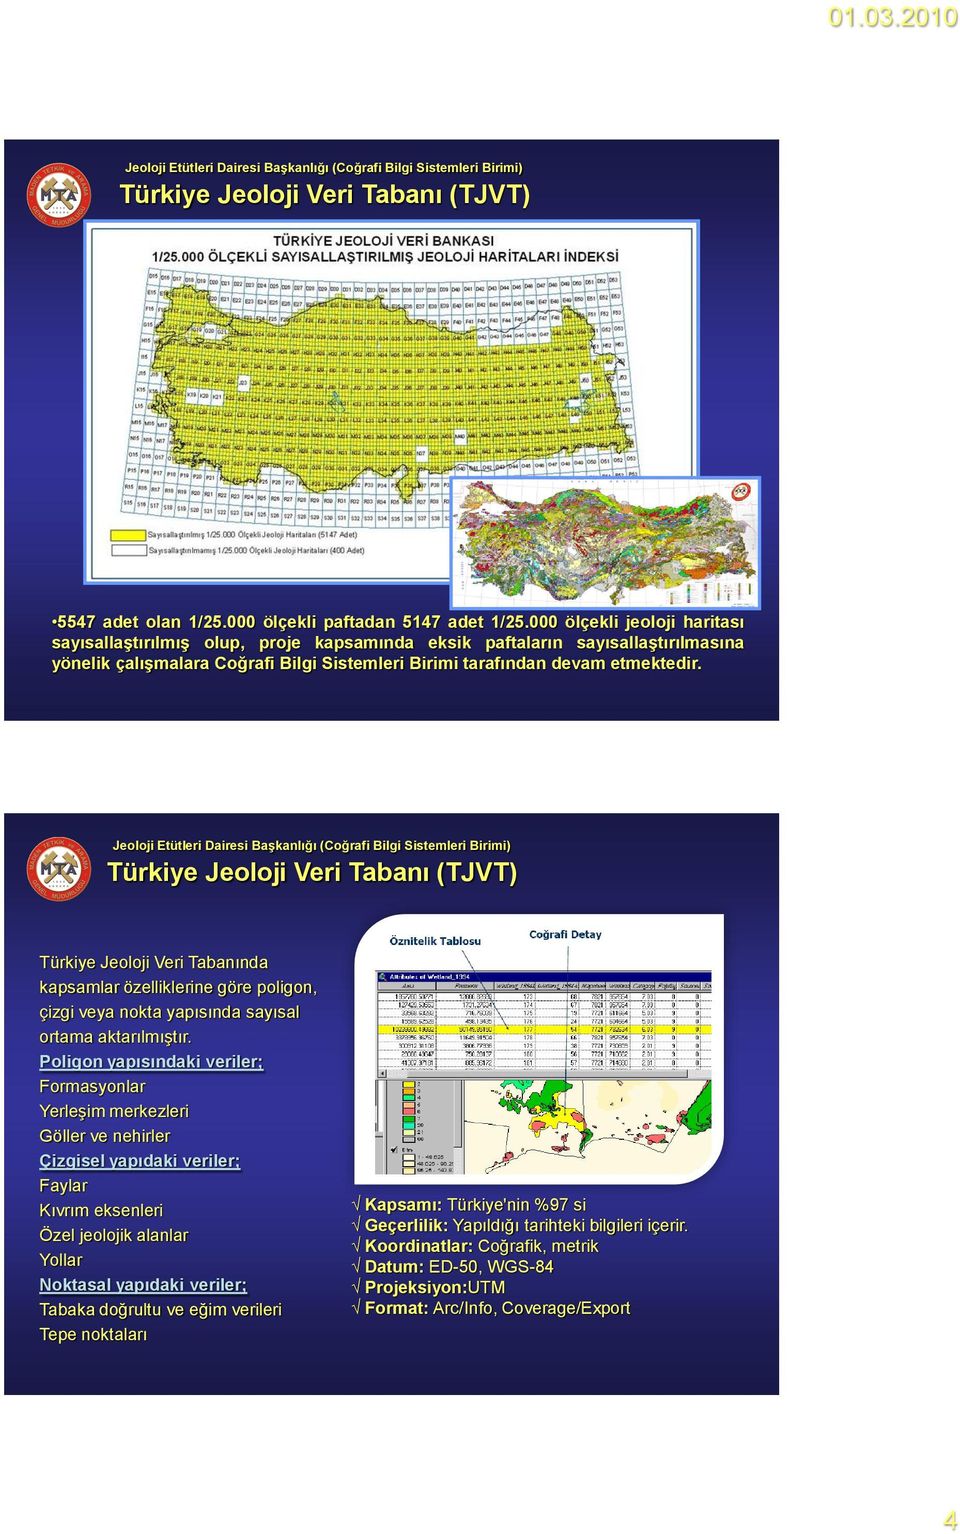 Jeoloji Etütleri Dairesi BaĢkanlığı (Coğrafi Bilgi Sistemleri Birimi) Türkiye Jeoloji Veri Tabanı (TJVT) Türkiye Jeoloji Veri Tabanında kapsamlar özelliklerine göre poligon, çizgi veya nokta